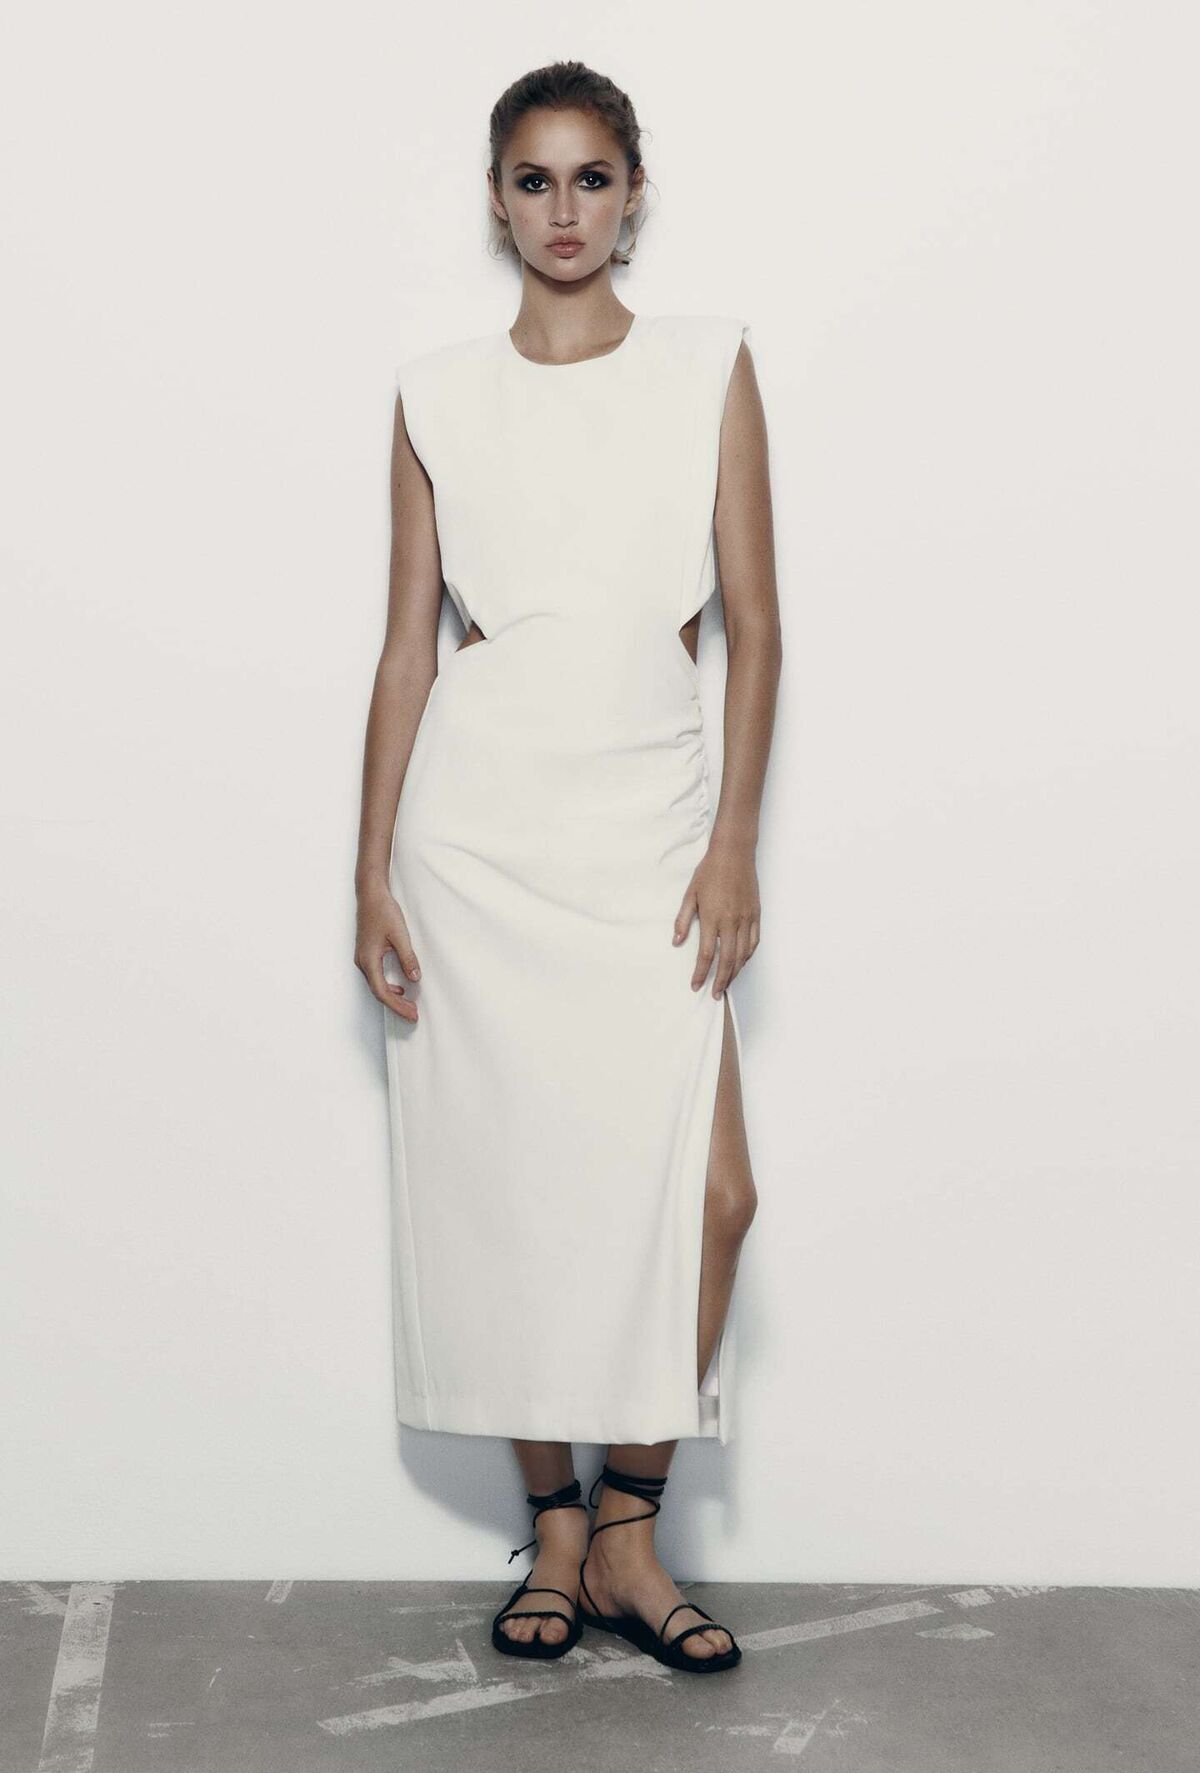 La modelo con un vestido blanco lleva un vestido largo blanco con una falda  larga.